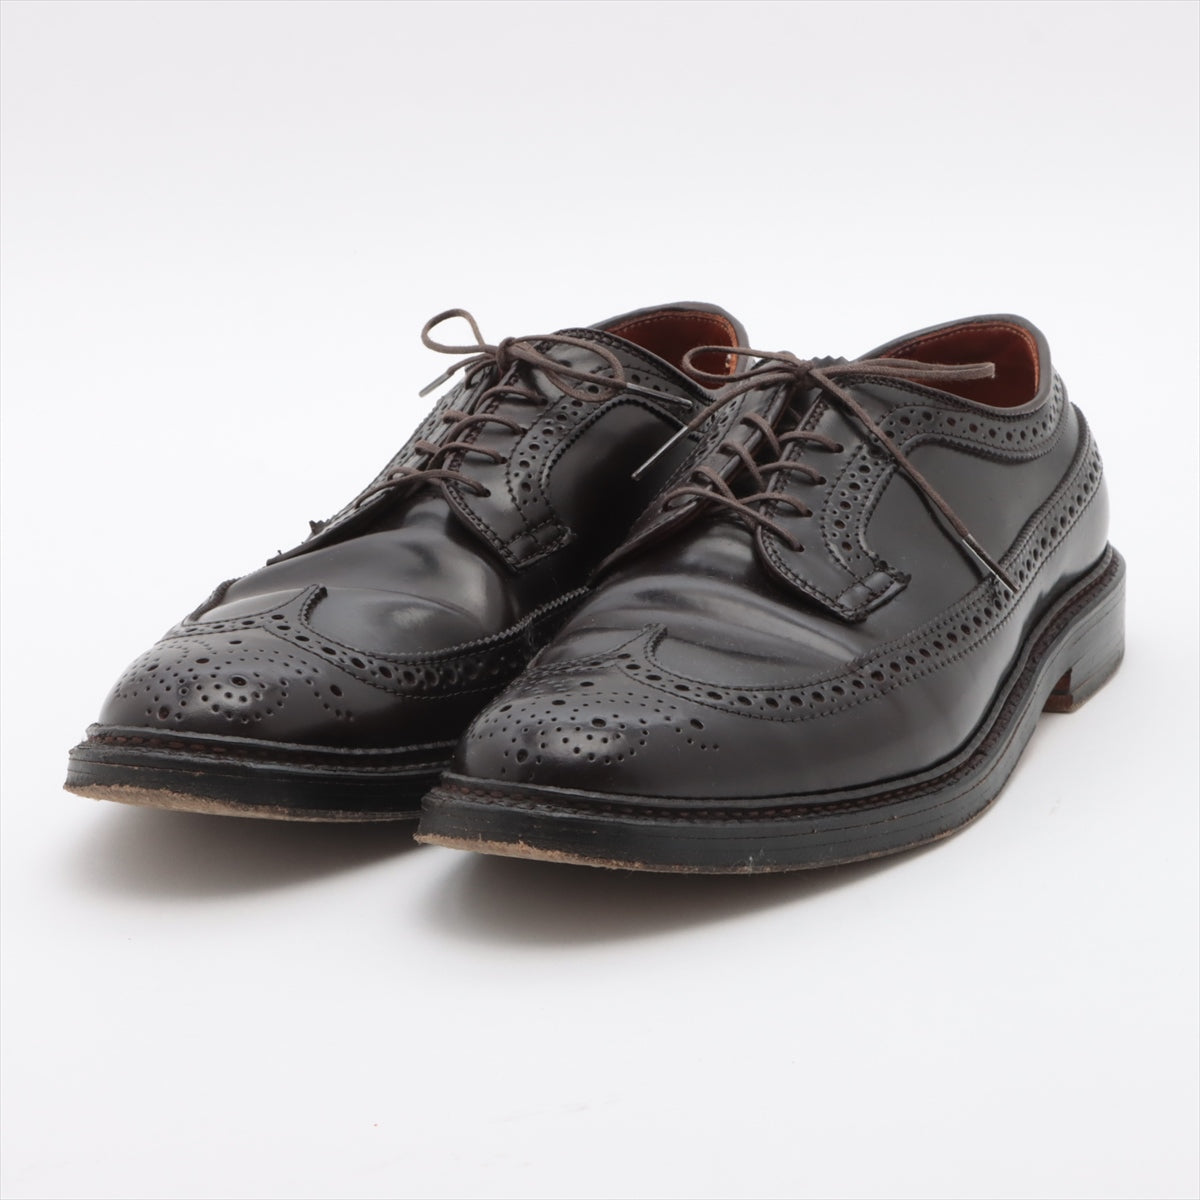 Alden Cordovan Leather shoes 8 1/2 Men's Burgundy 975 wingtip